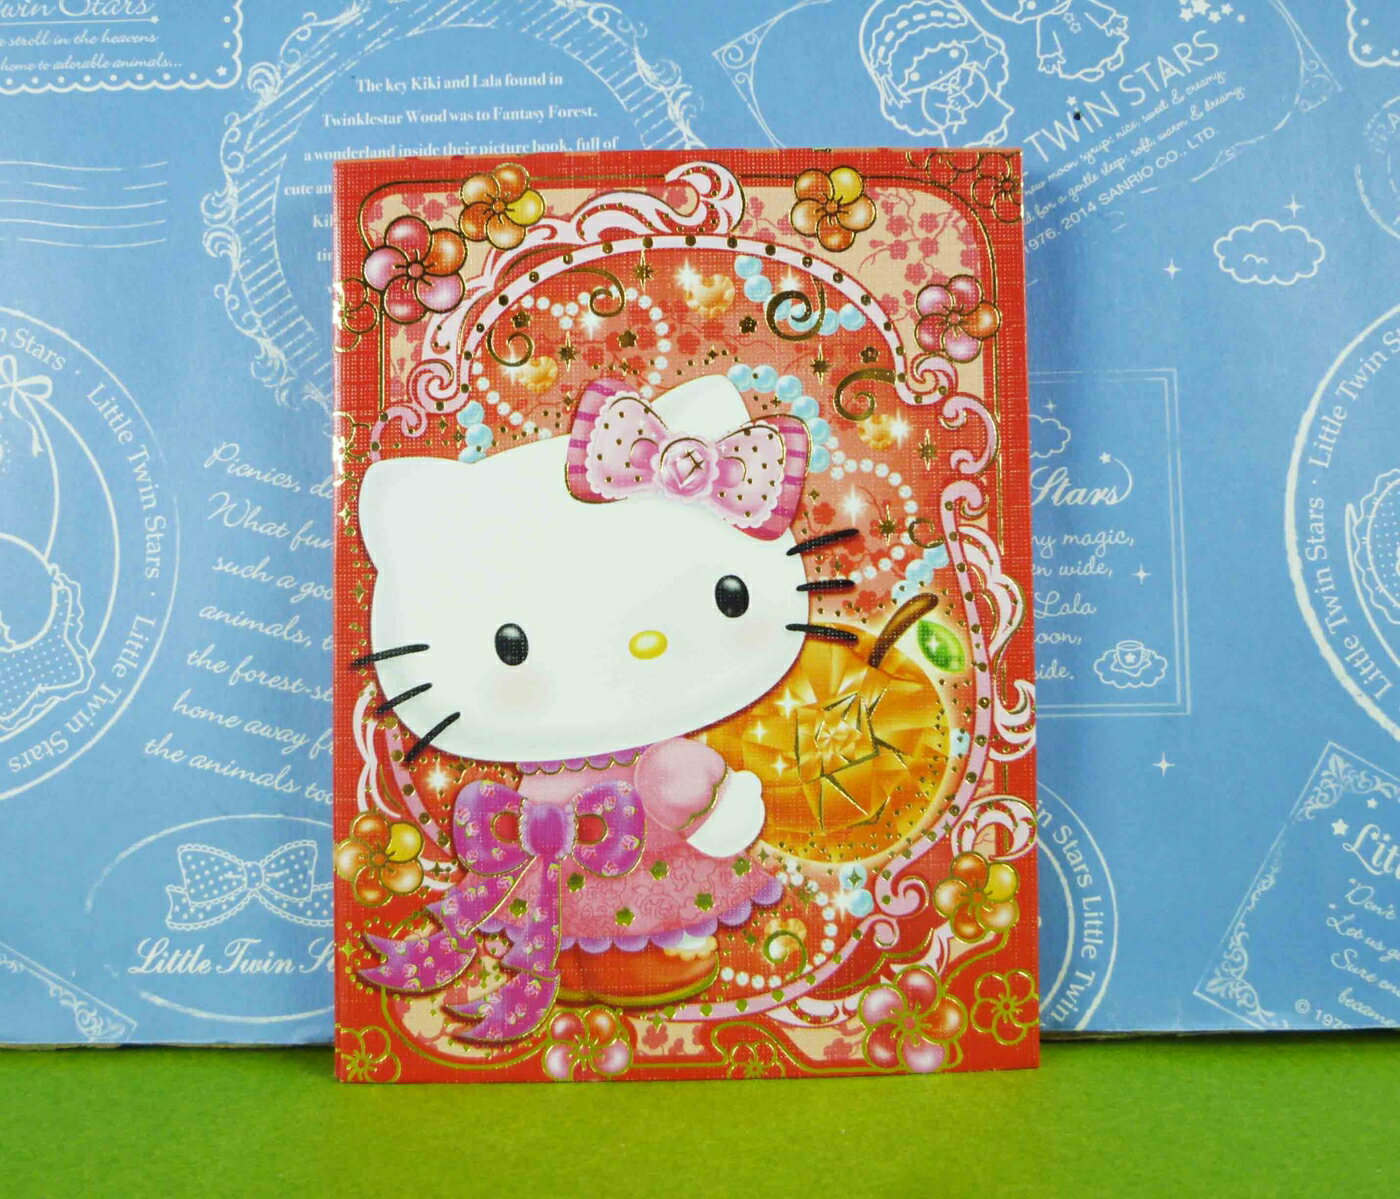 【震撼精品百貨】Hello Kitty 凱蒂貓 紅包袋組 橘子【共1款】 震撼日式精品百貨